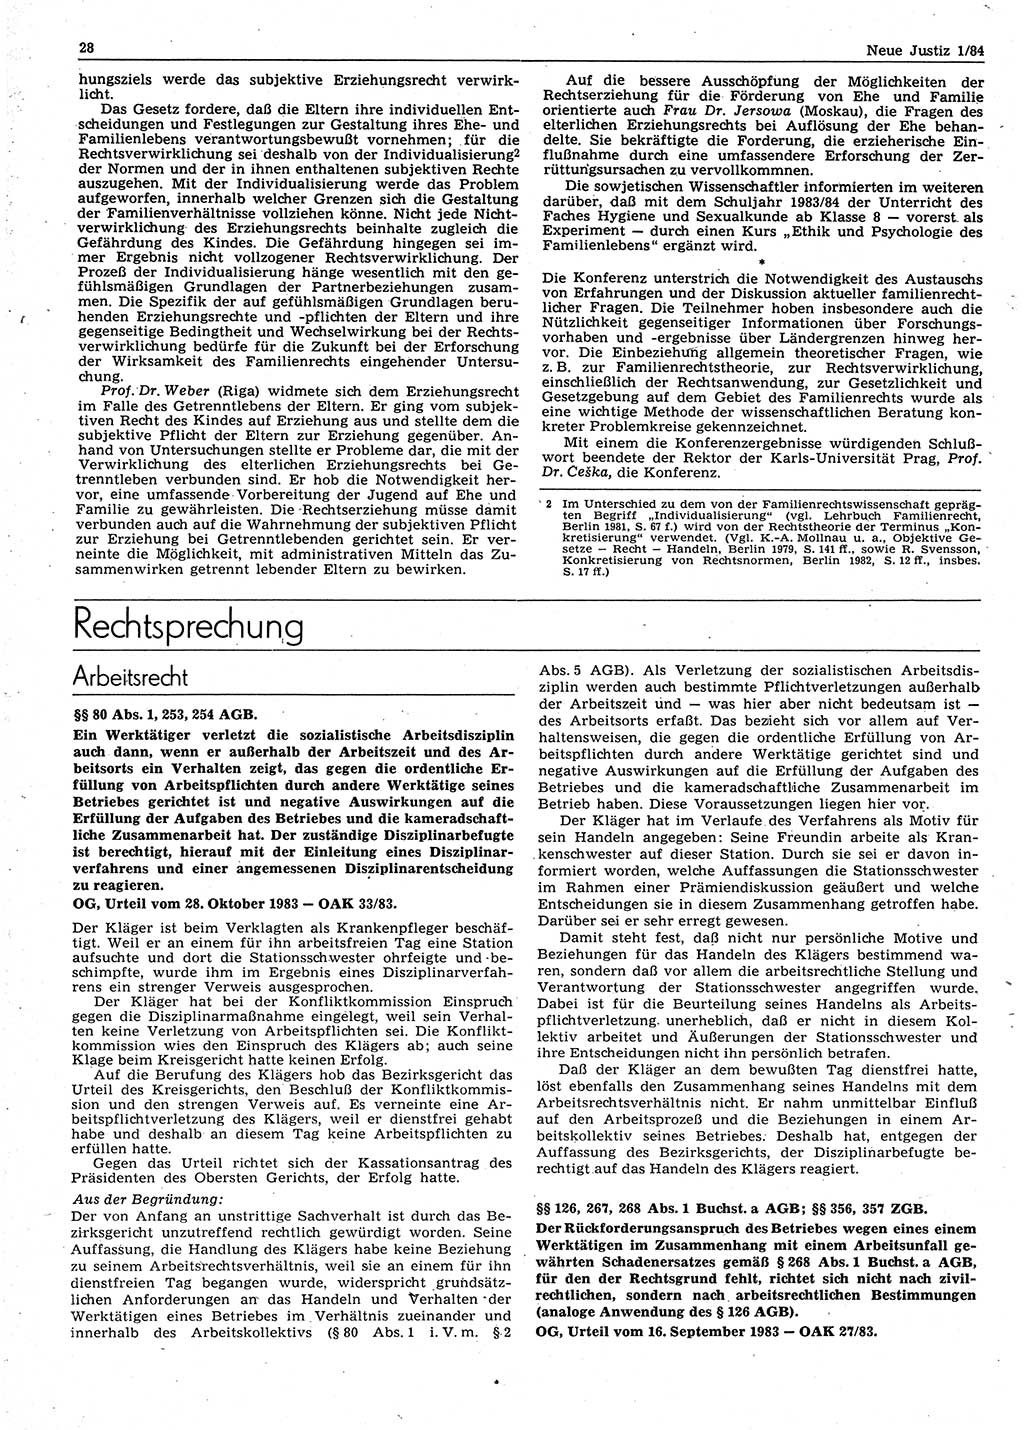 Neue Justiz (NJ), Zeitschrift für sozialistisches Recht und Gesetzlichkeit [Deutsche Demokratische Republik (DDR)], 38. Jahrgang 1984, Seite 28 (NJ DDR 1984, S. 28)